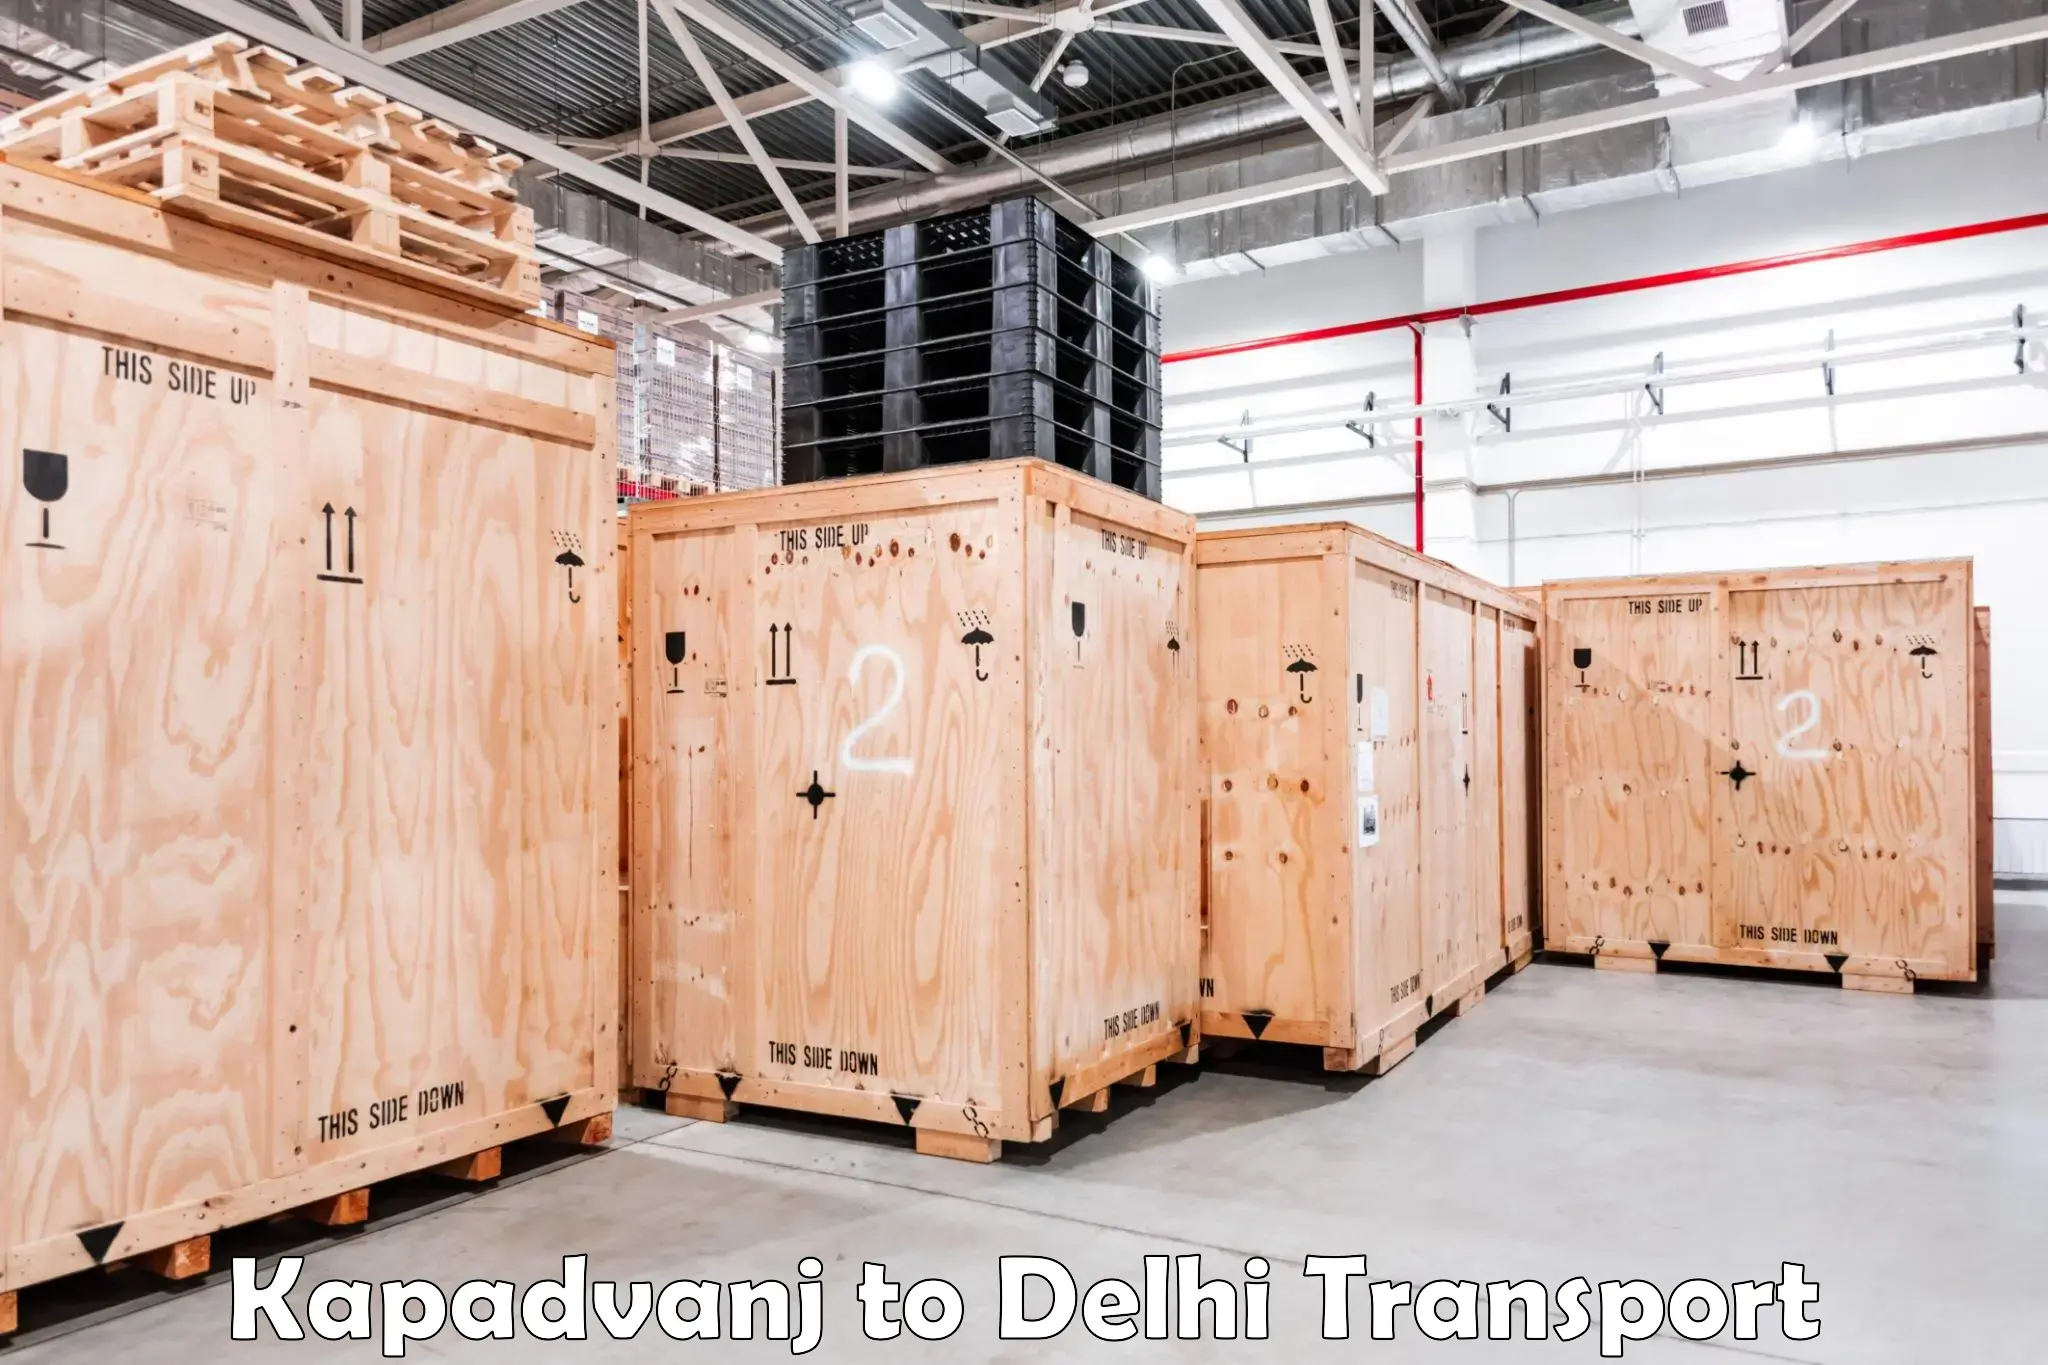 Express transport services Kapadvanj to NCR